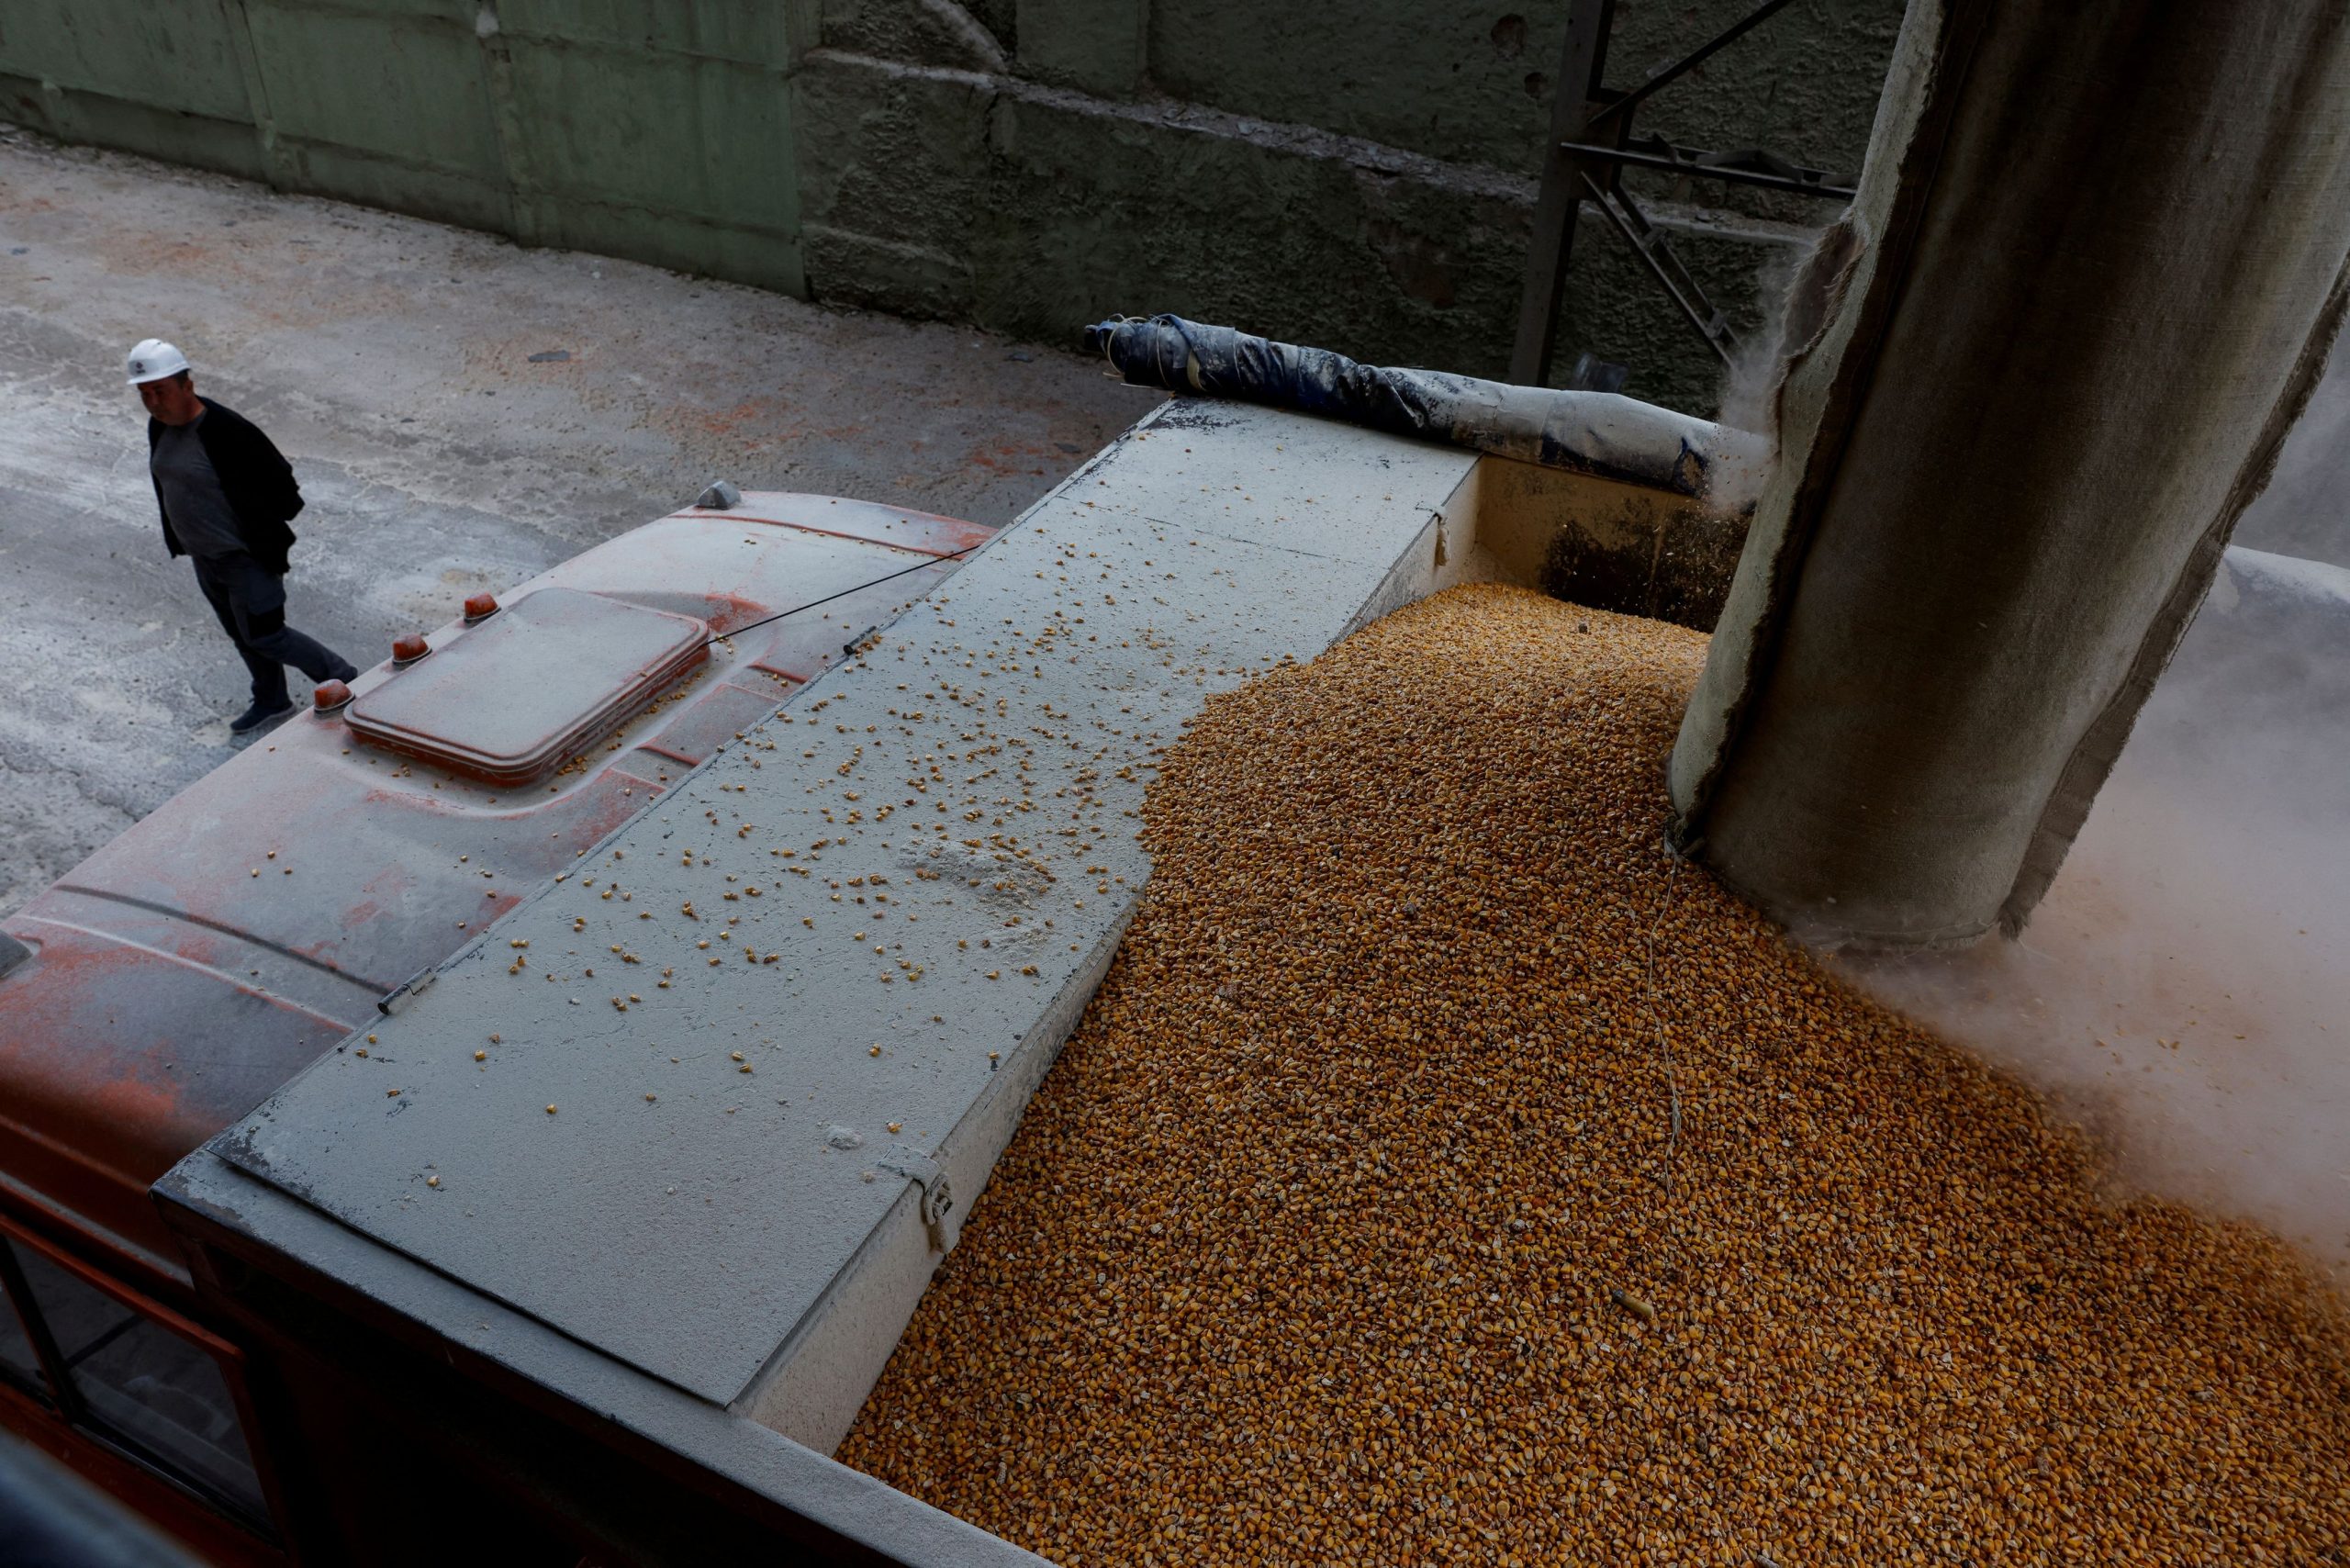 Ουκρανία: Προσωρινά σιλό για τη διευκόλυνση των εξαγωγών σιτηρών ανήγγειλε ο Μπάιντεν